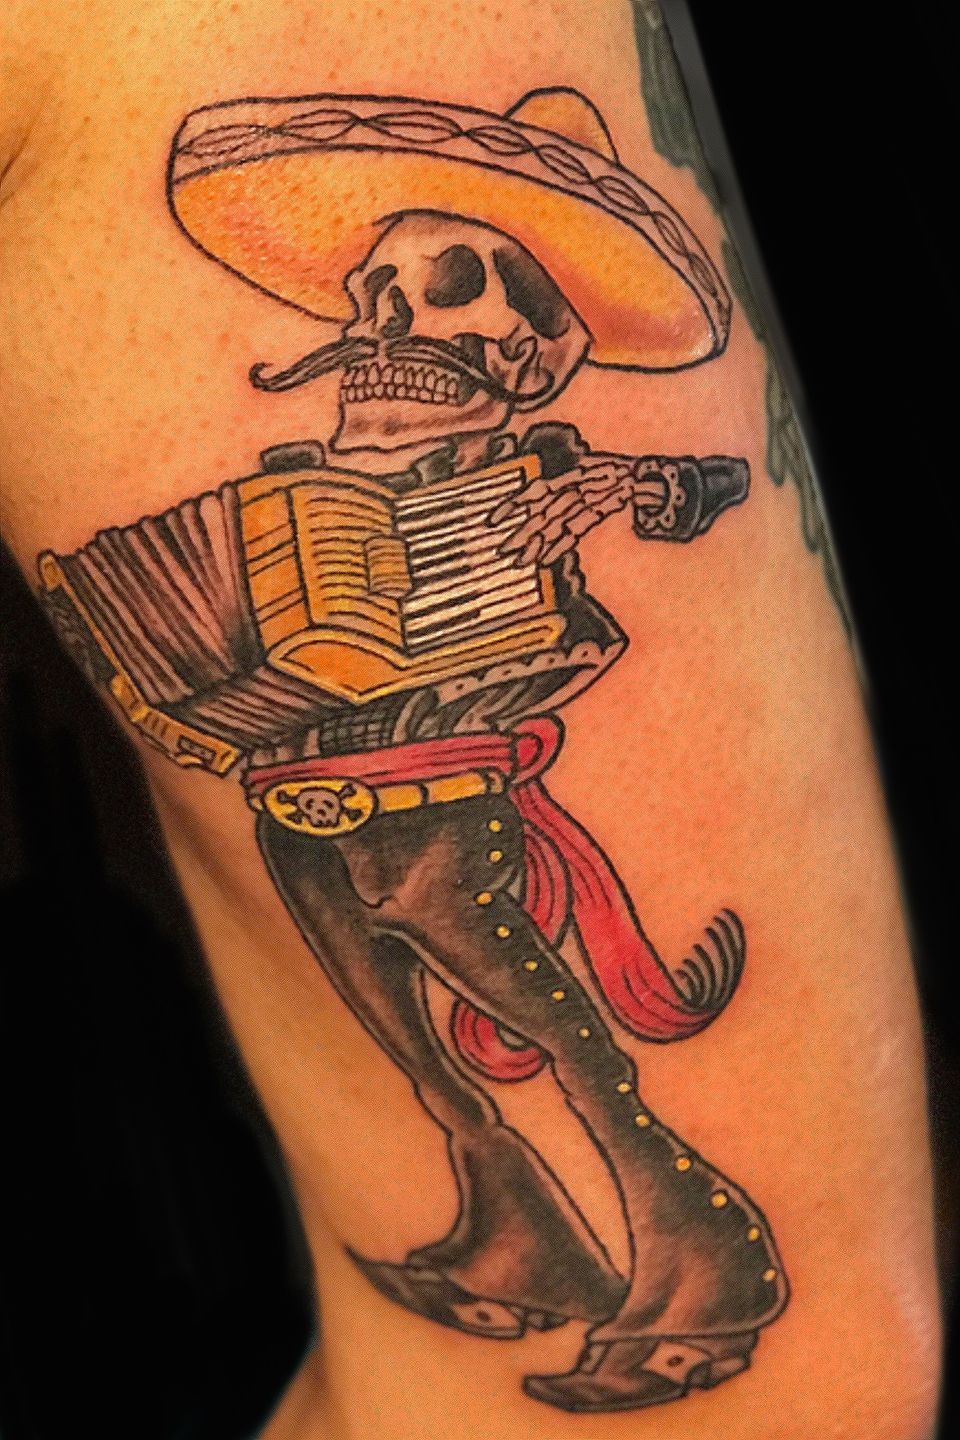 Skeleton mariachi tattoo  Mariachi tattoo Traditional tattoo design Skeleton  tattoos